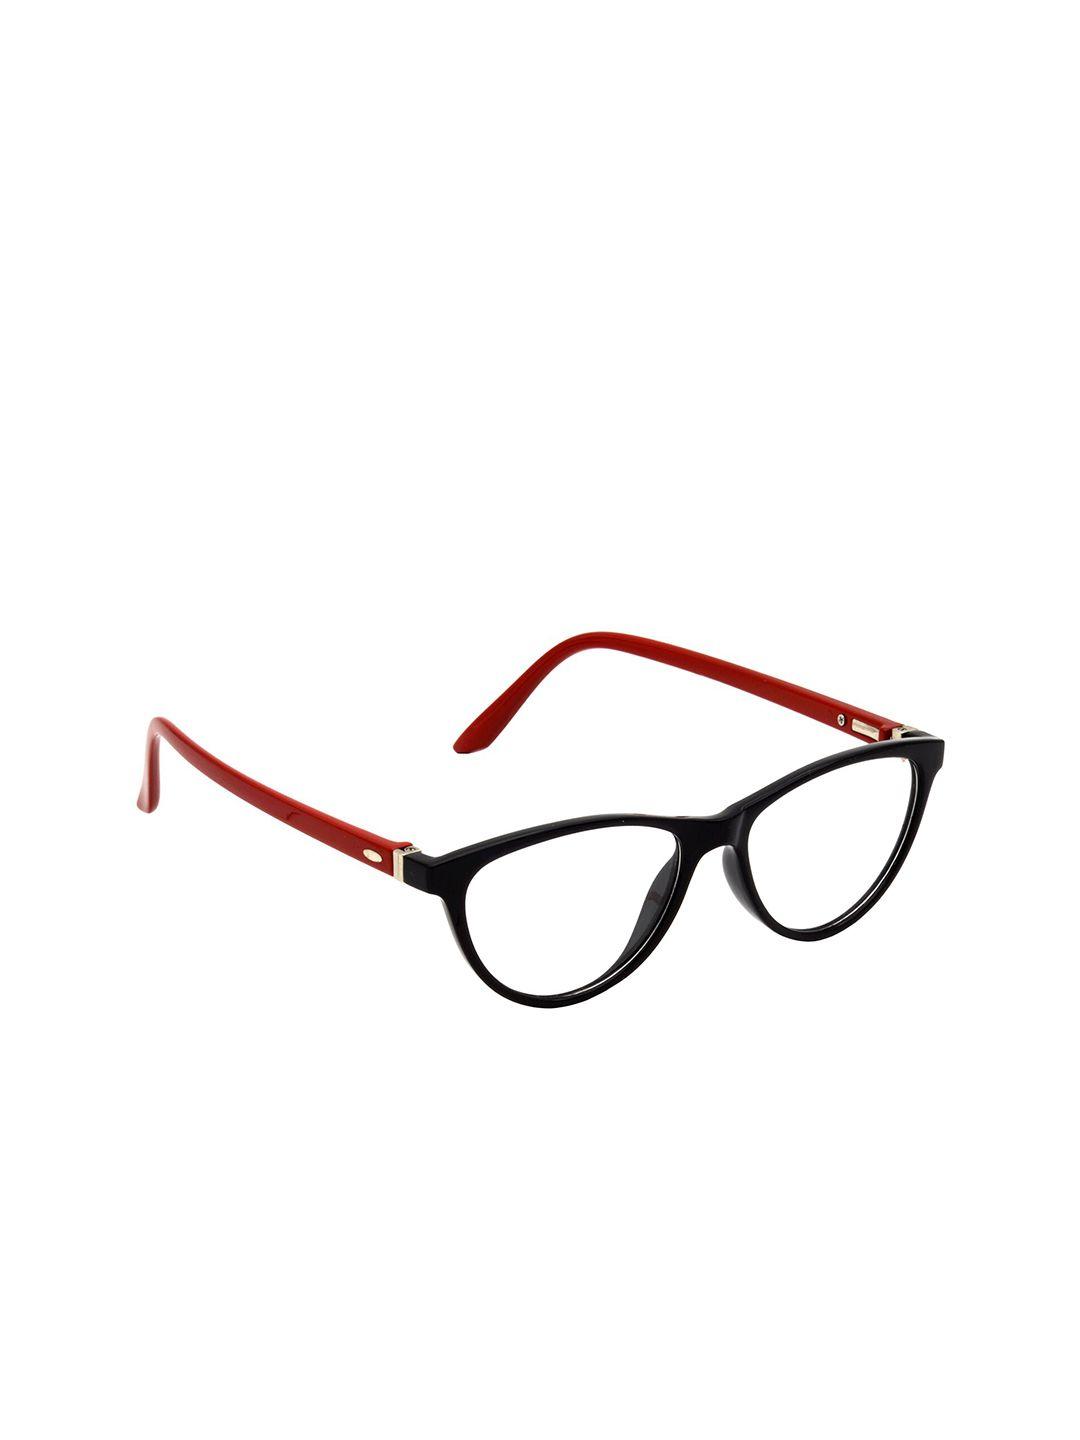 hrinkar unisex red & black colourblocked full rim cateye frames